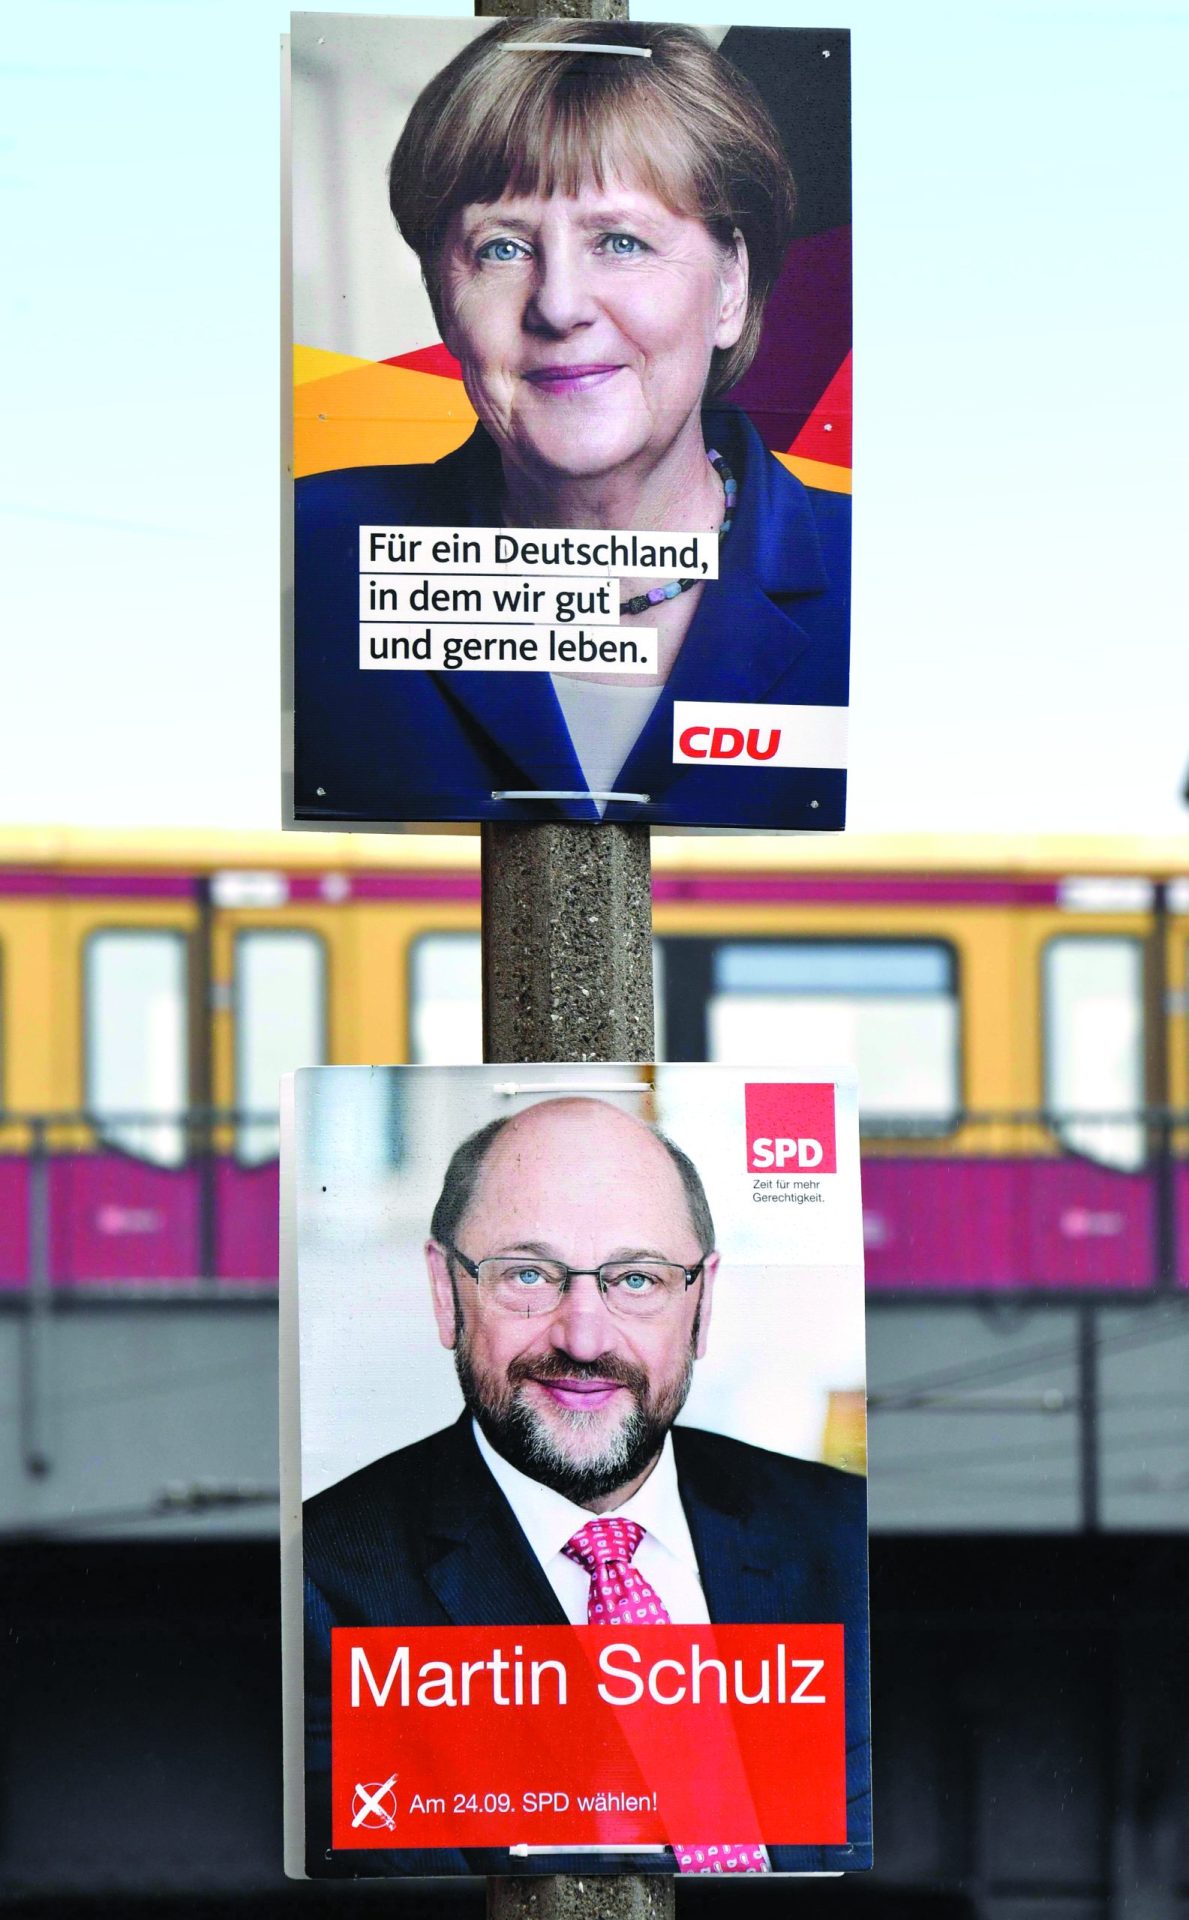 Merkel ou Schulz. O amanhã que nos toca depois de os alemães irem a votos